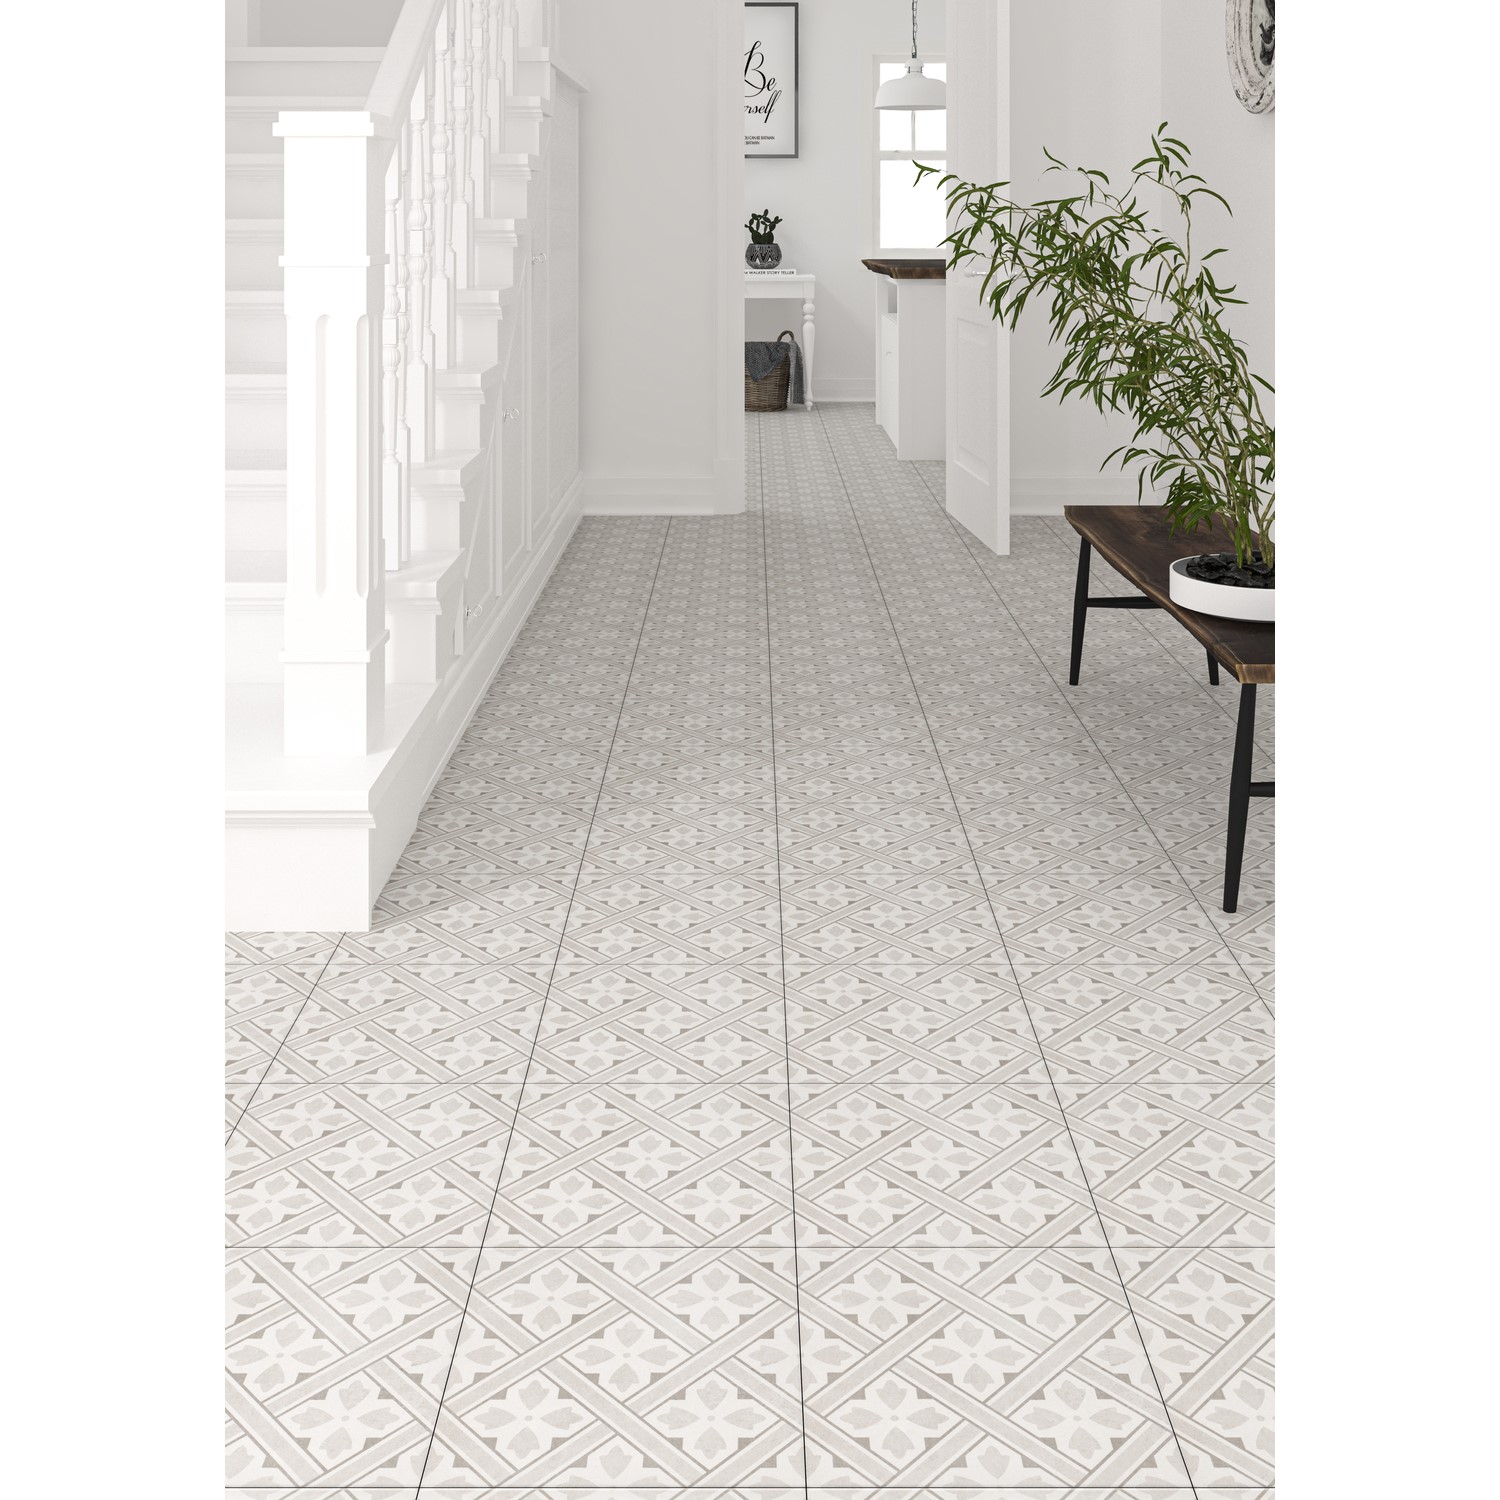 Beige Patterned Floor Tile 33 X 33cm, Patterned Floor Tiles